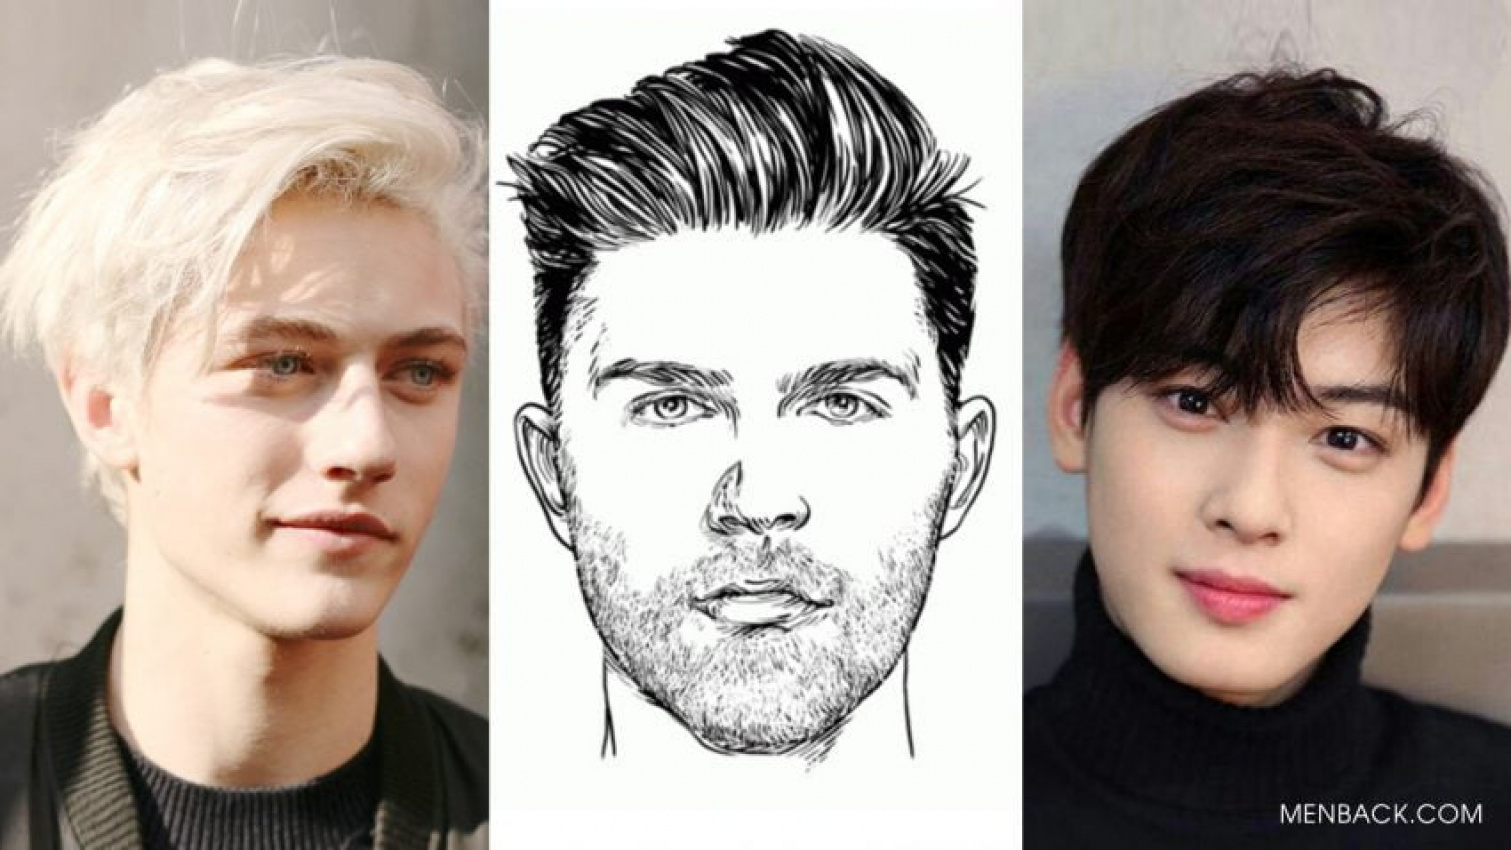 20 kiểu tóc nam đẹp nhất hiện nay cho từng dáng khuôn mặt